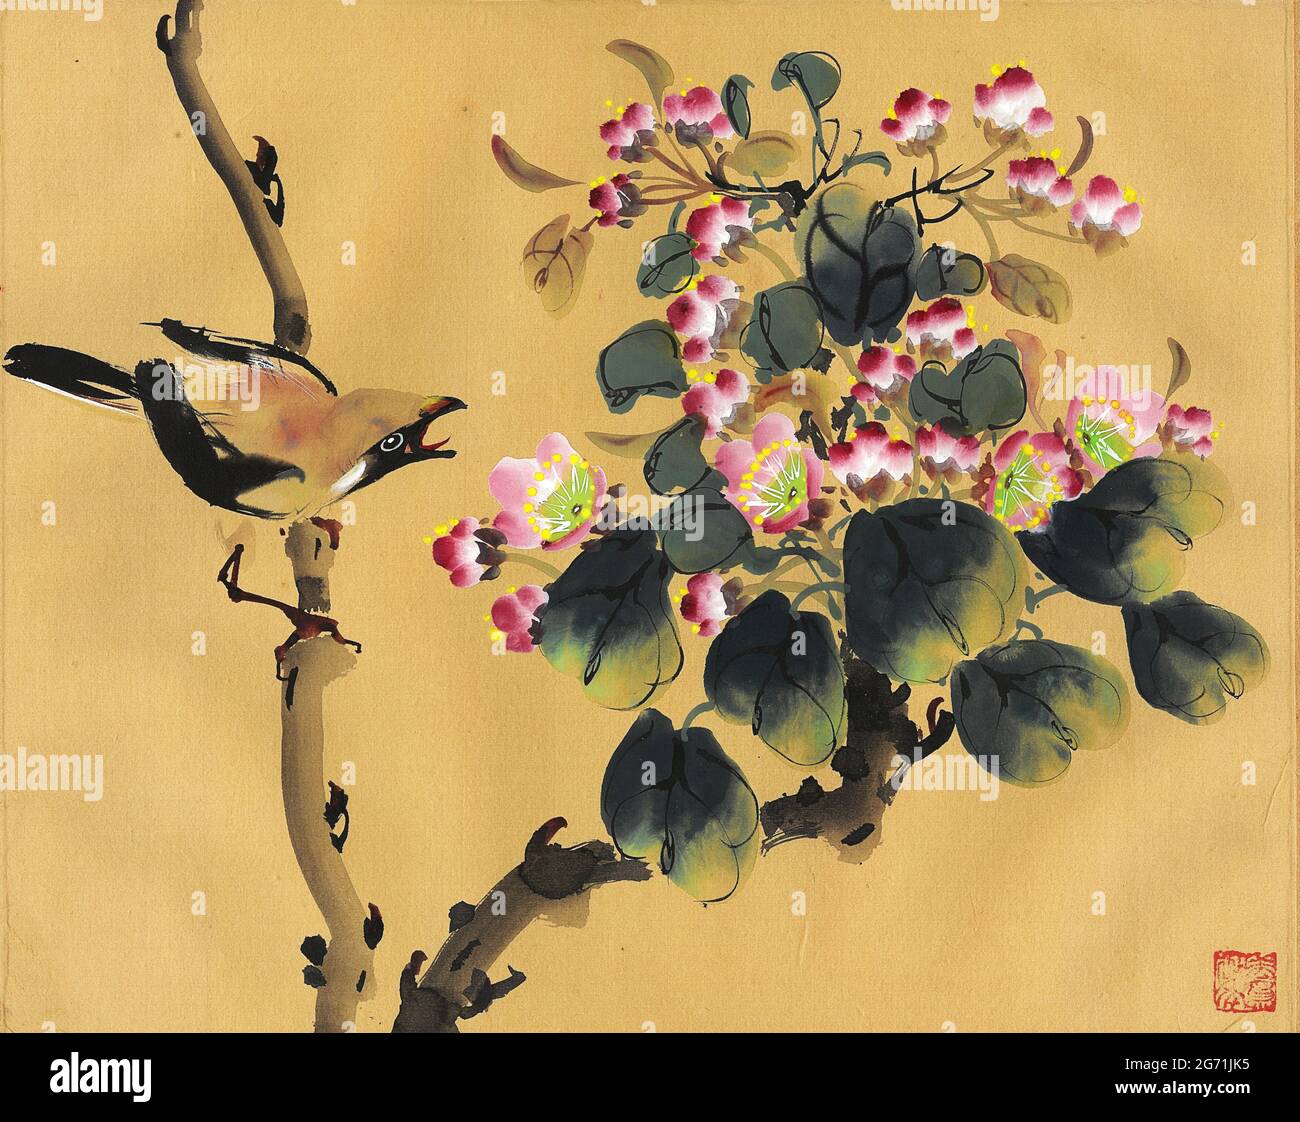 Peinture chinoise, oiseau et fleurs, chantant oiseau jay sur branche avec prunus Blossom, sur soie. Banque D'Images